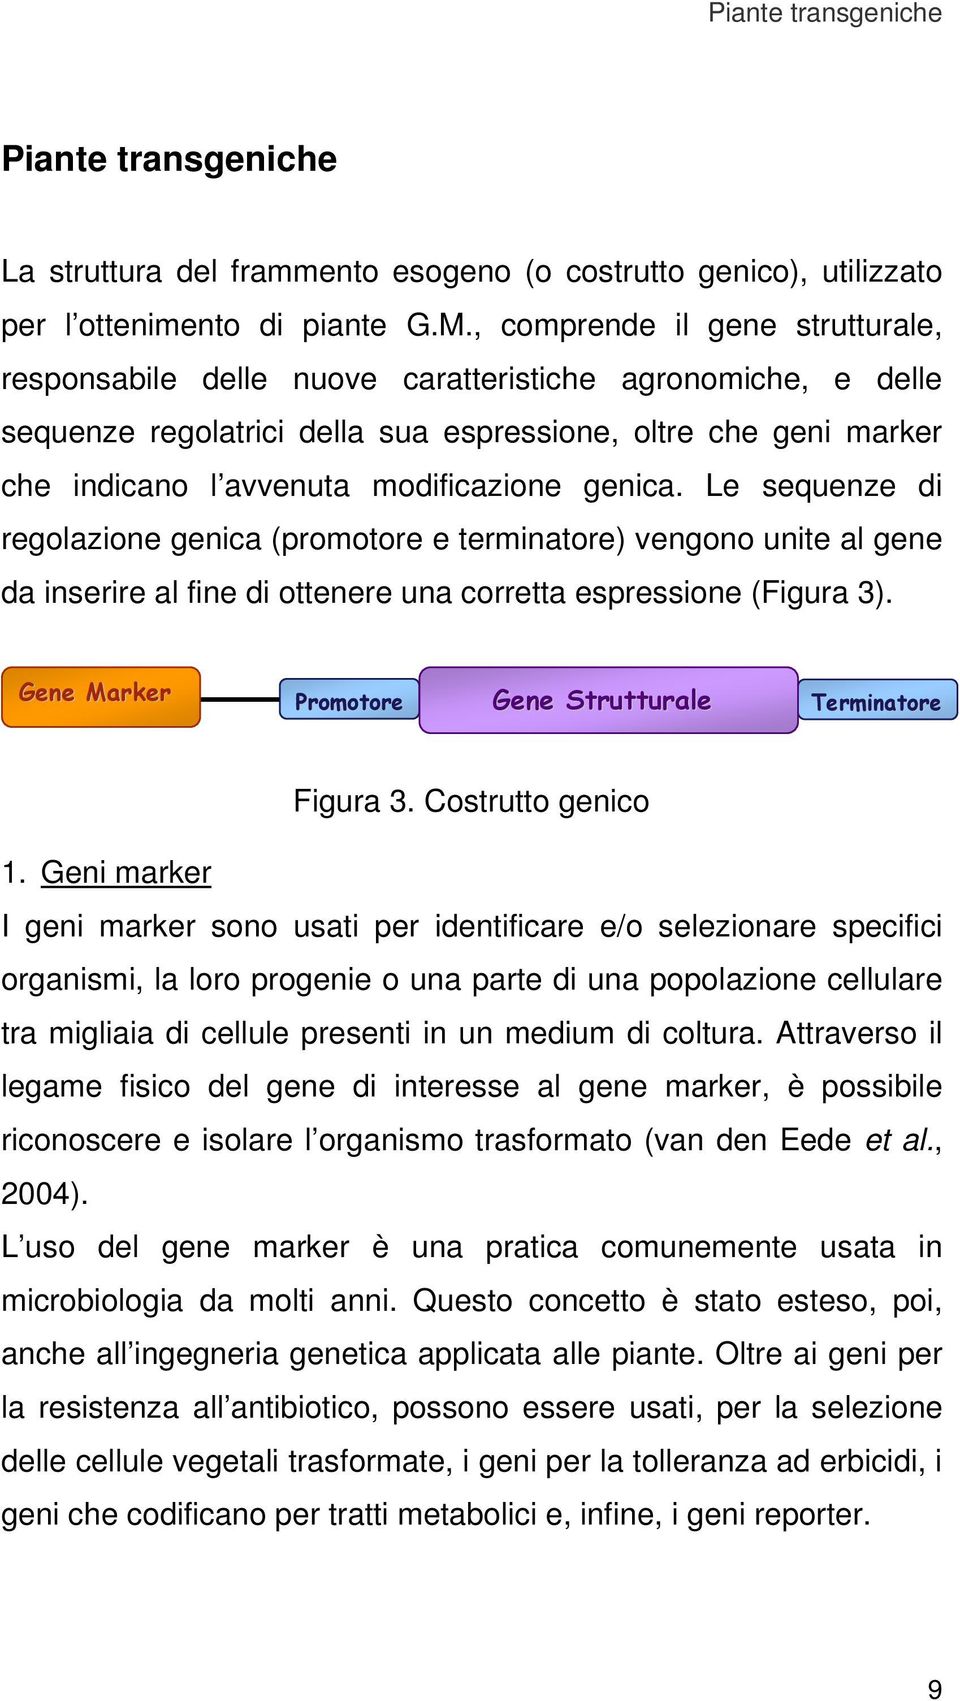 genica. Le sequenze di regolazione genica (promotore e terminatore) vengono unite al gene da inserire al fine di ottenere una corretta espressione (Figura 3).